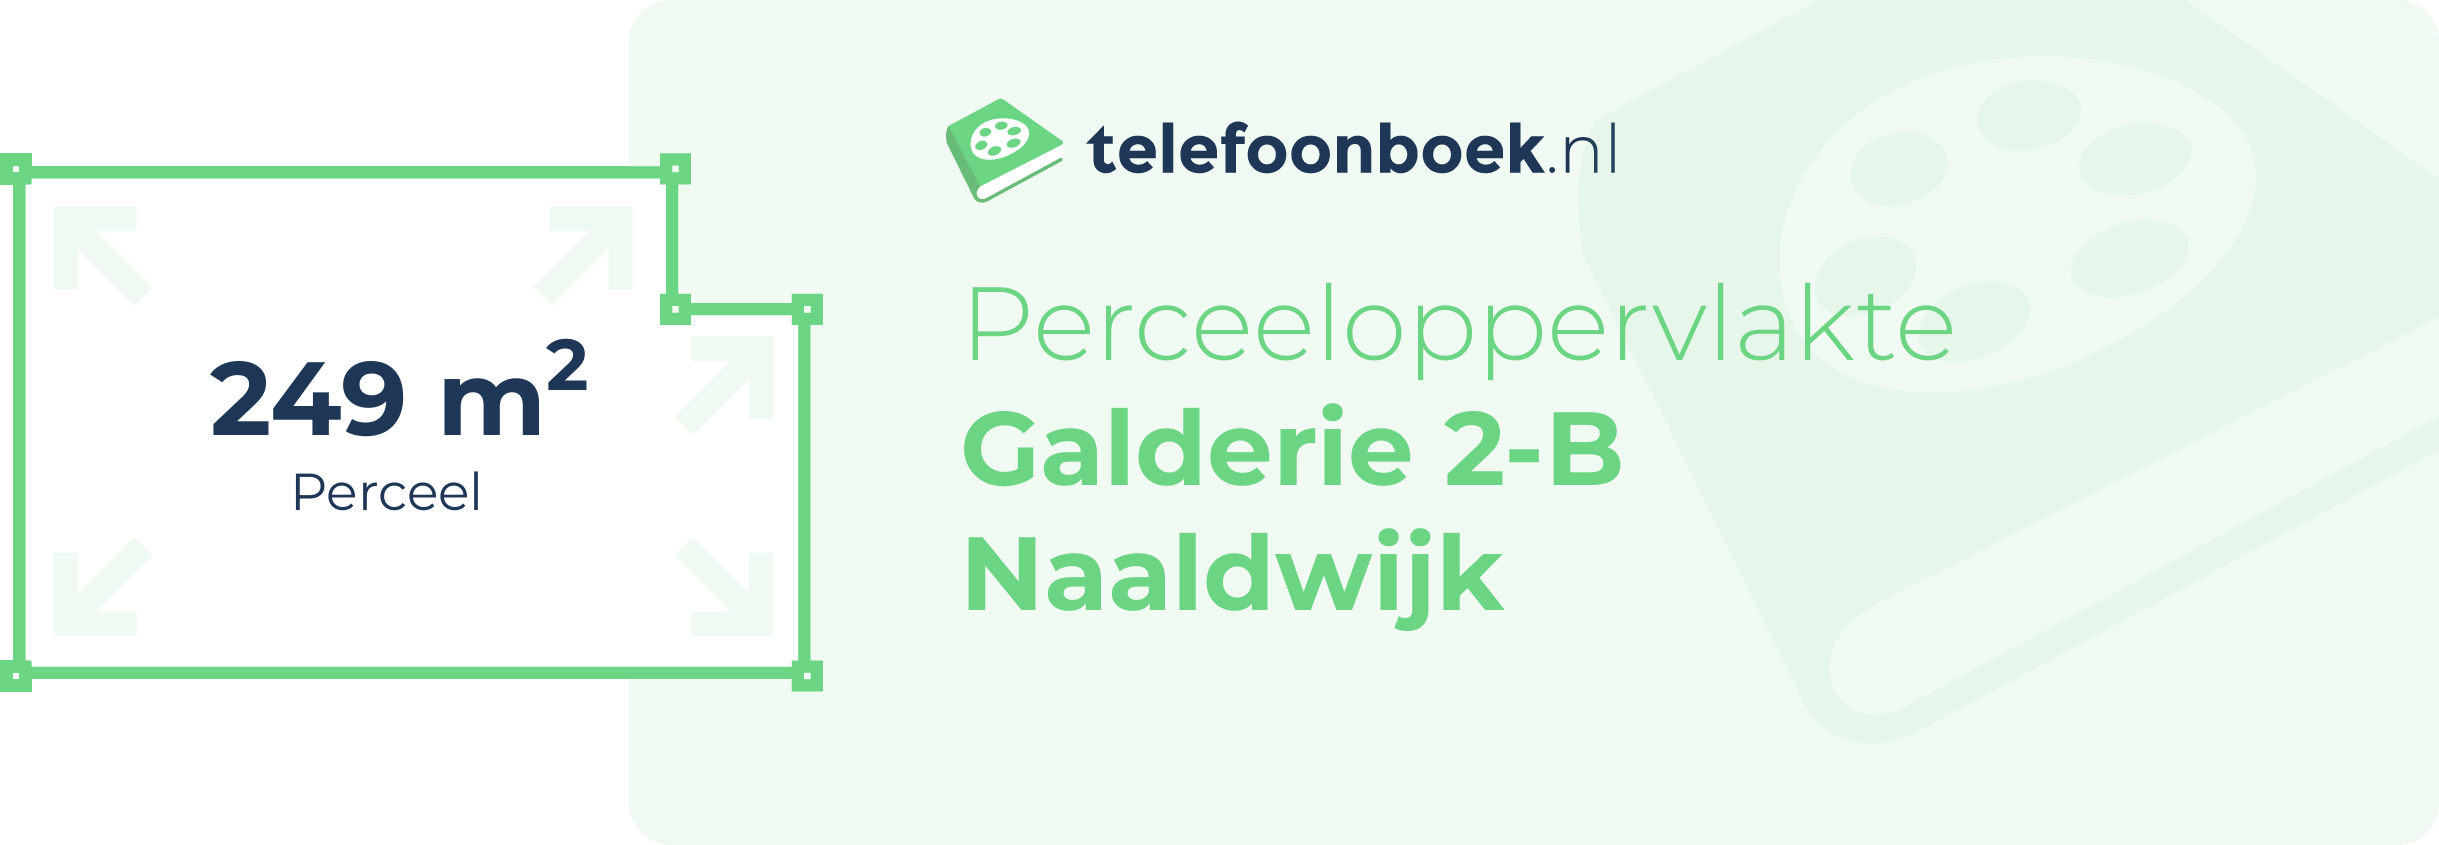 Perceeloppervlakte Galderie 2-B Naaldwijk